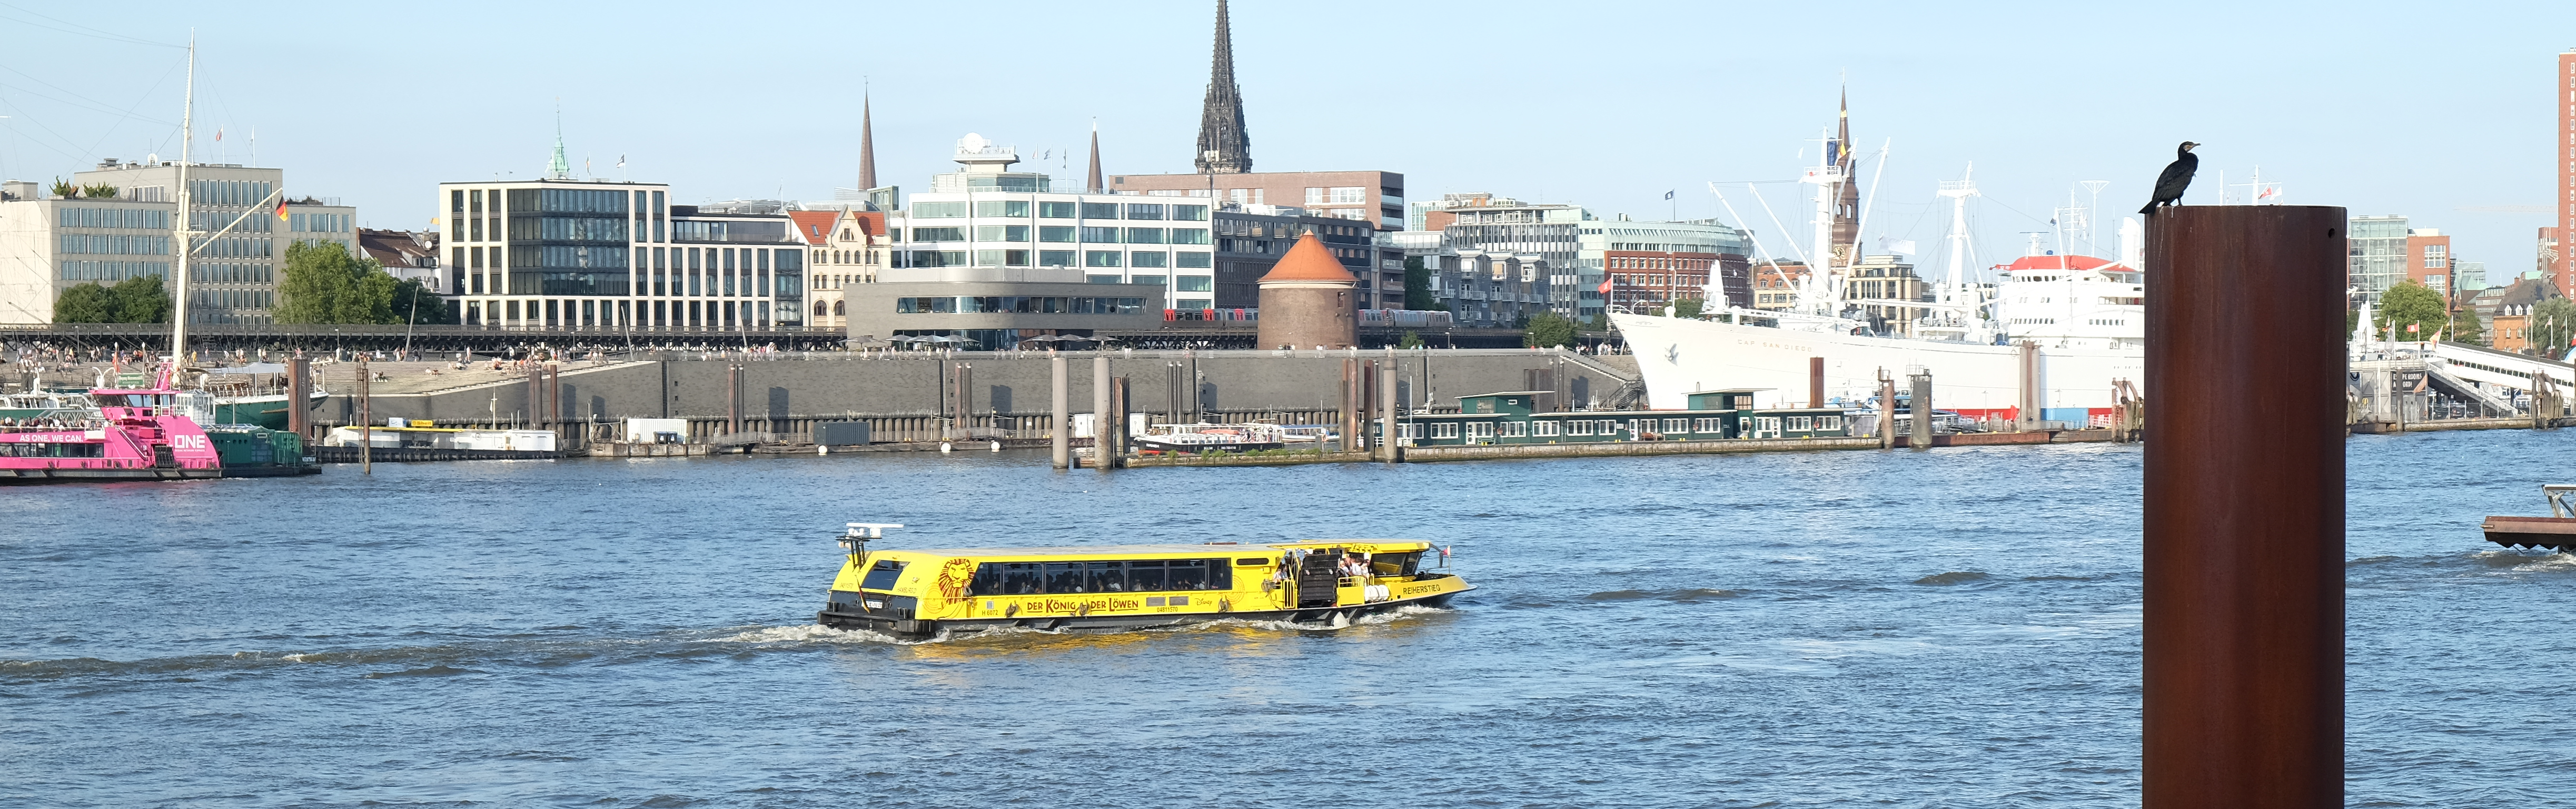 Blick auf die Landungsbrücken in Hamburg. Eine gelbe Barkasse schippert auf der Elbe.